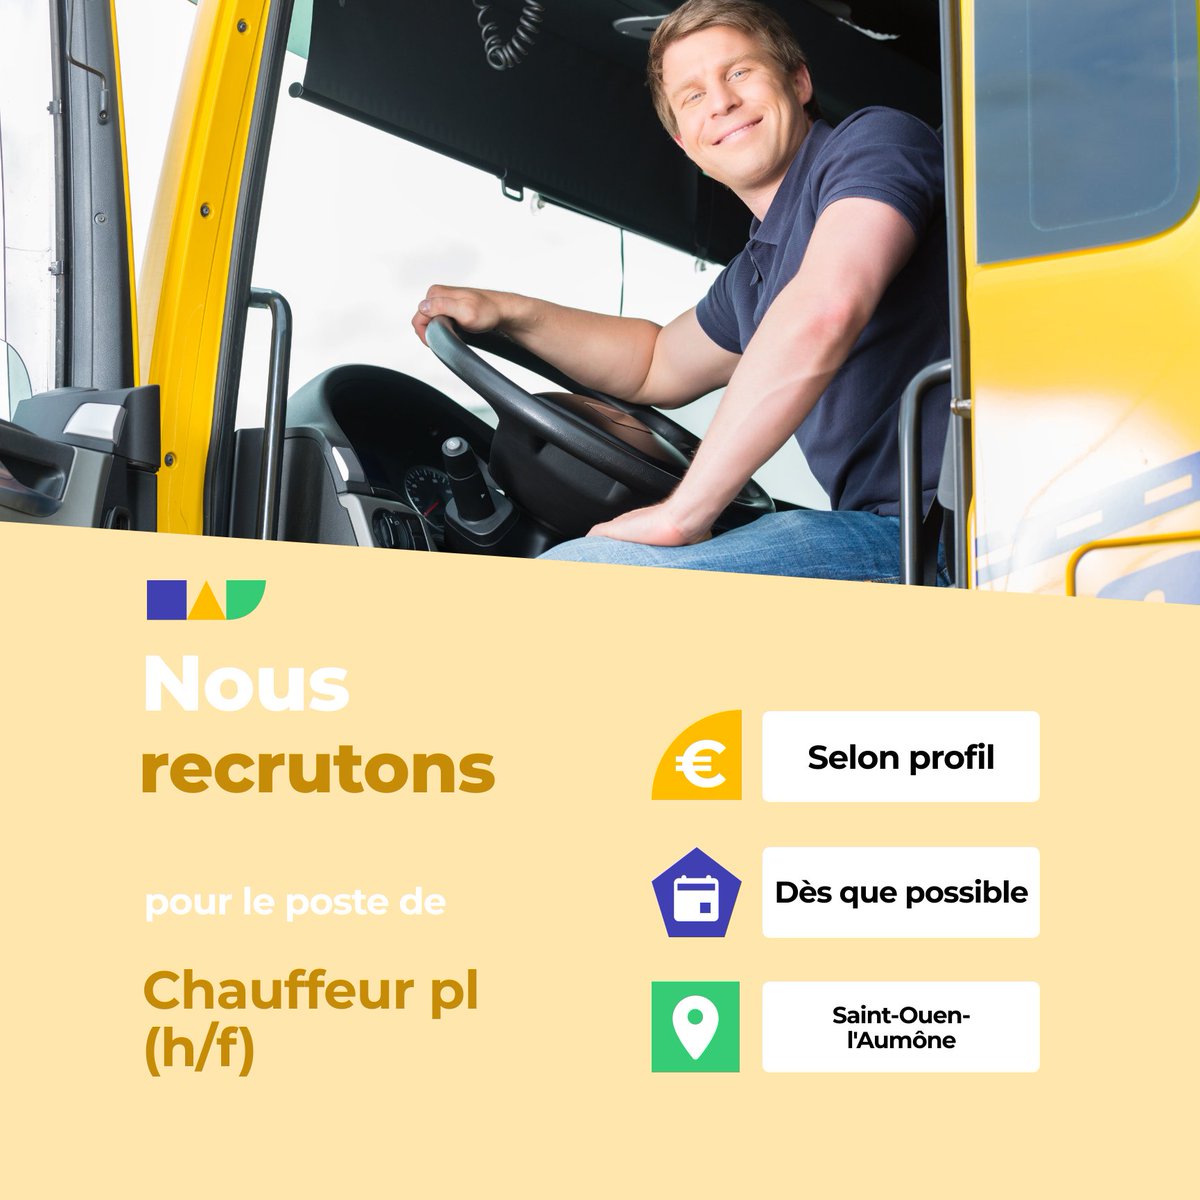 🛎️ Nouvelle offre d'emploi : Chauffeur pl (h/f)
🌎 Saint-Ouen-l'Aumône (95310)
📅 Démarrage dans les 7 prochains jours
👉 Plus d'infos : jobs.iziwork.com/fr/offre-emplo…
#recrutement #intérim #emploi #OffreEmploi #job #iziwork